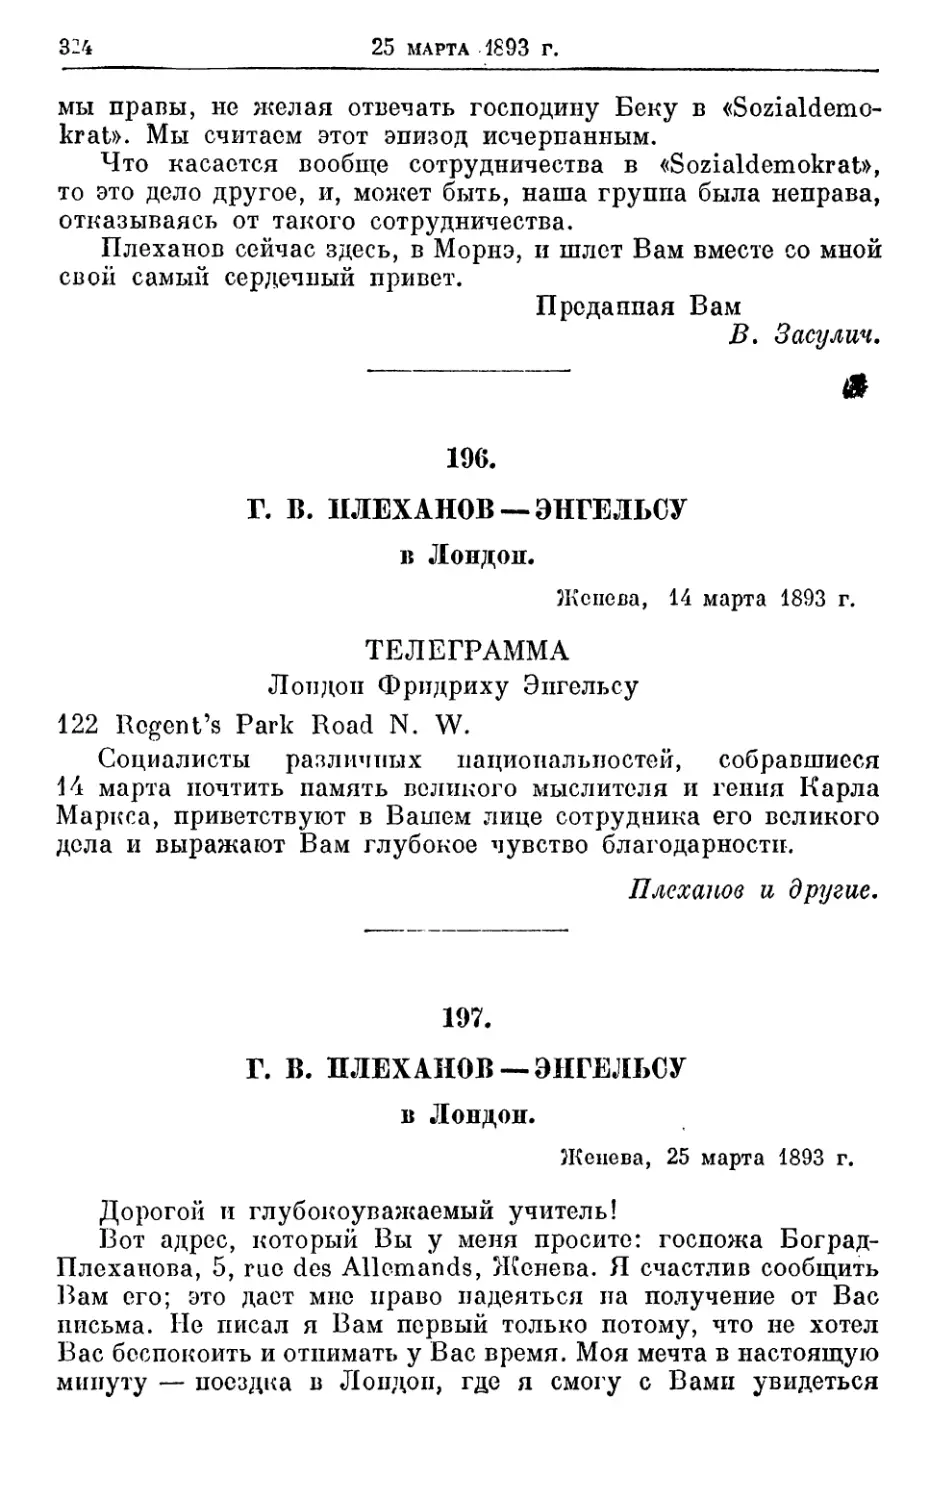 196. Плеханов — Энгельсу, 14 марта 1893г
197. Плеханов — Энгельсу, 25 марта 1893г